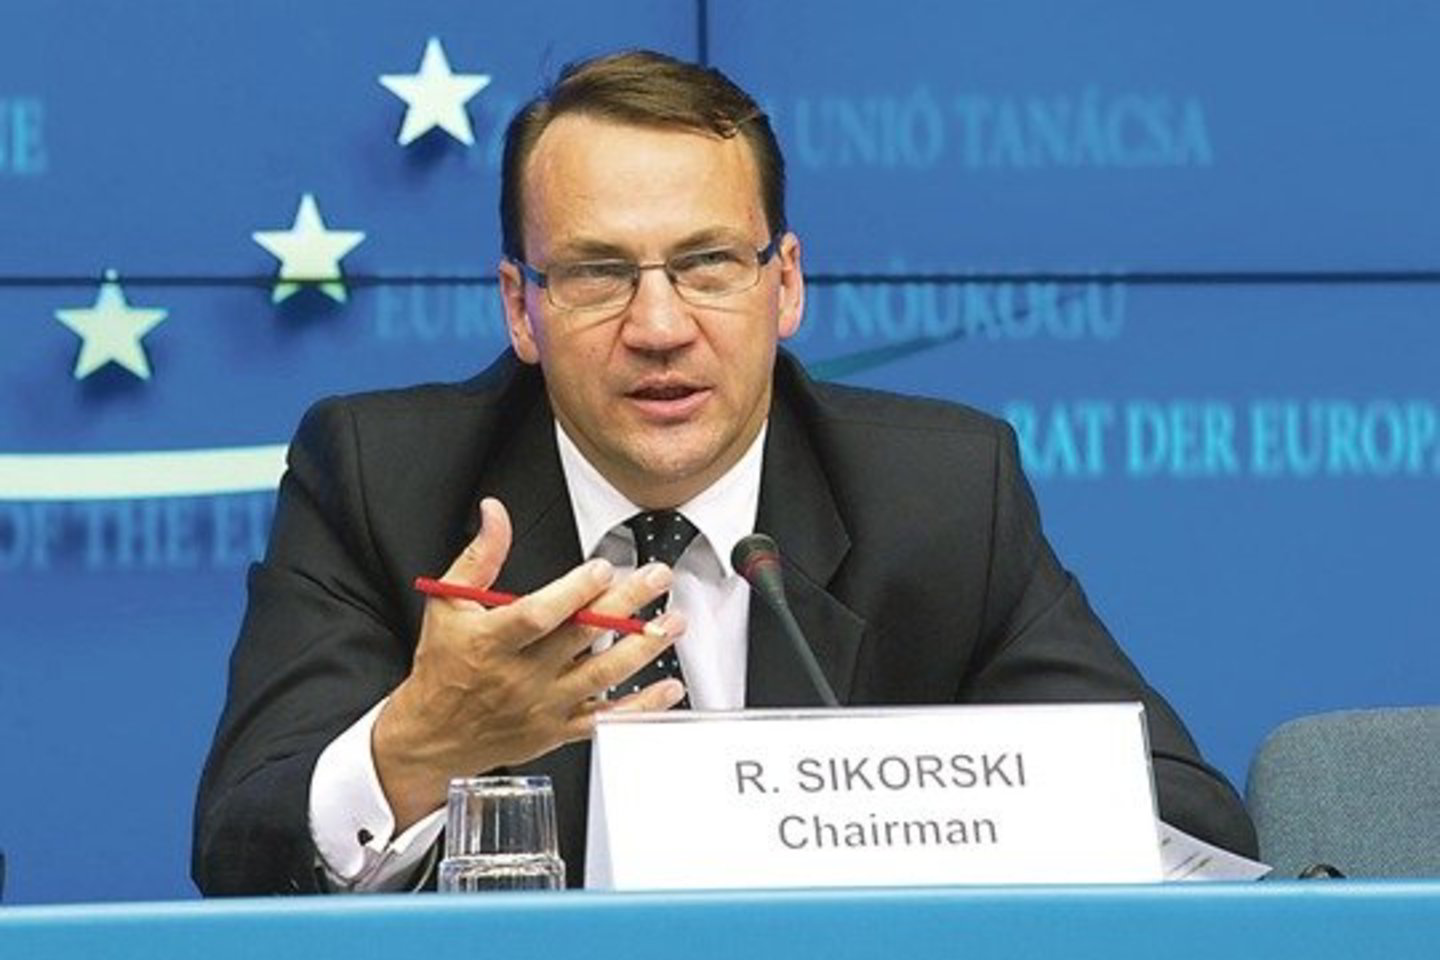 R. Sikorskio ambicijas dėl Rytų partnerystės projekto kartais užgožia jo asmeninis ne visai diplomatiškas elgesys.<br>AP